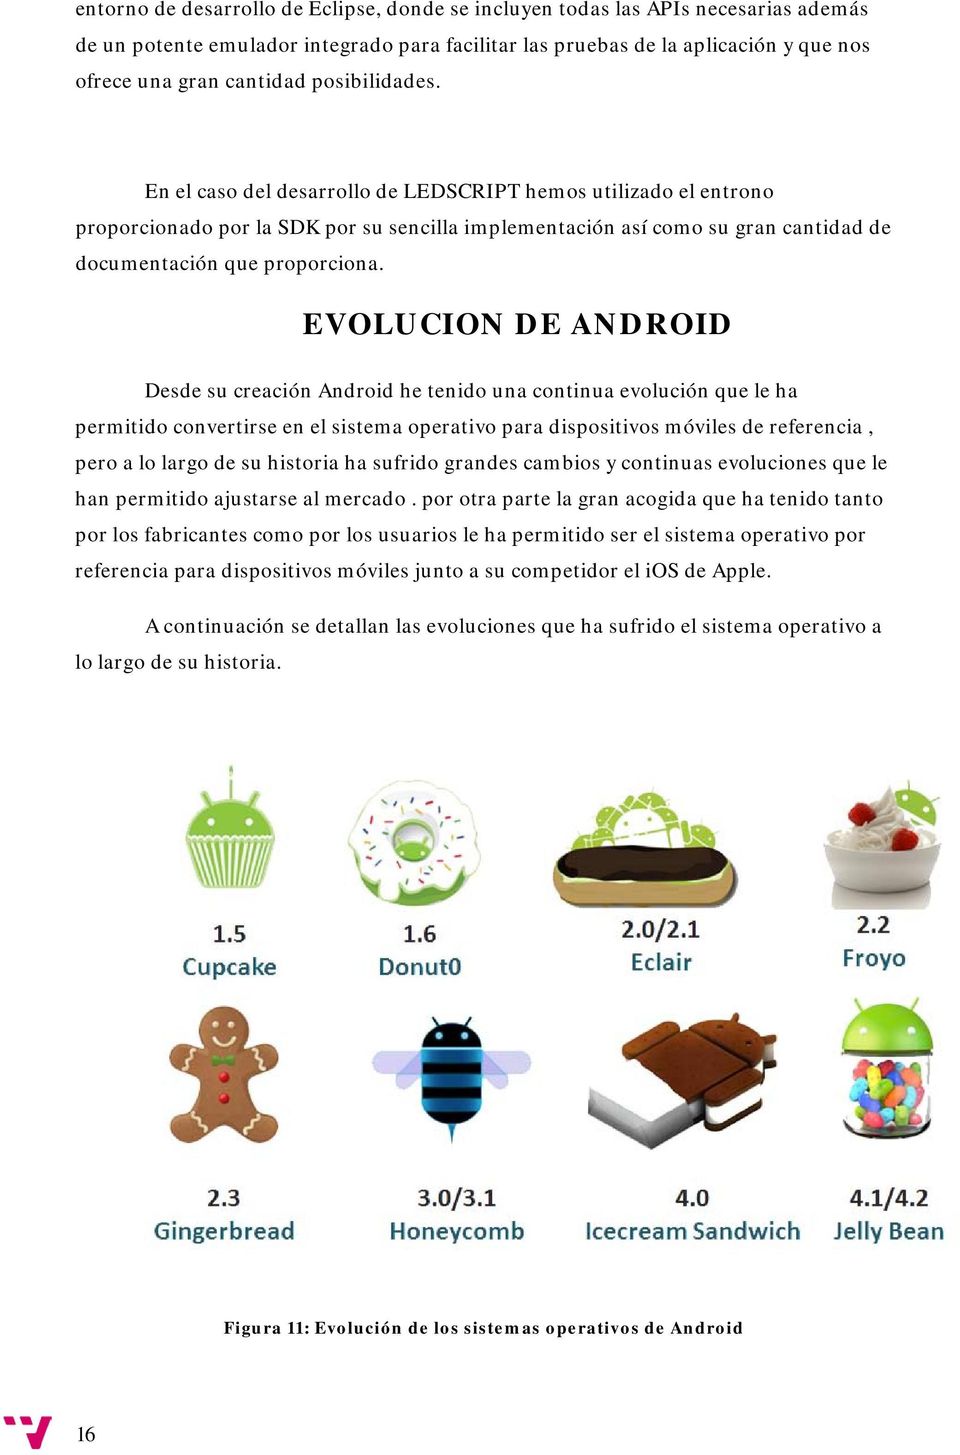 EVOLUCION DE ANDROID Desde su creación Android he tenido una continua evolución que le ha permitido convertirse en el sistema operativo para dispositivos móviles de referencia, pero a lo largo de su